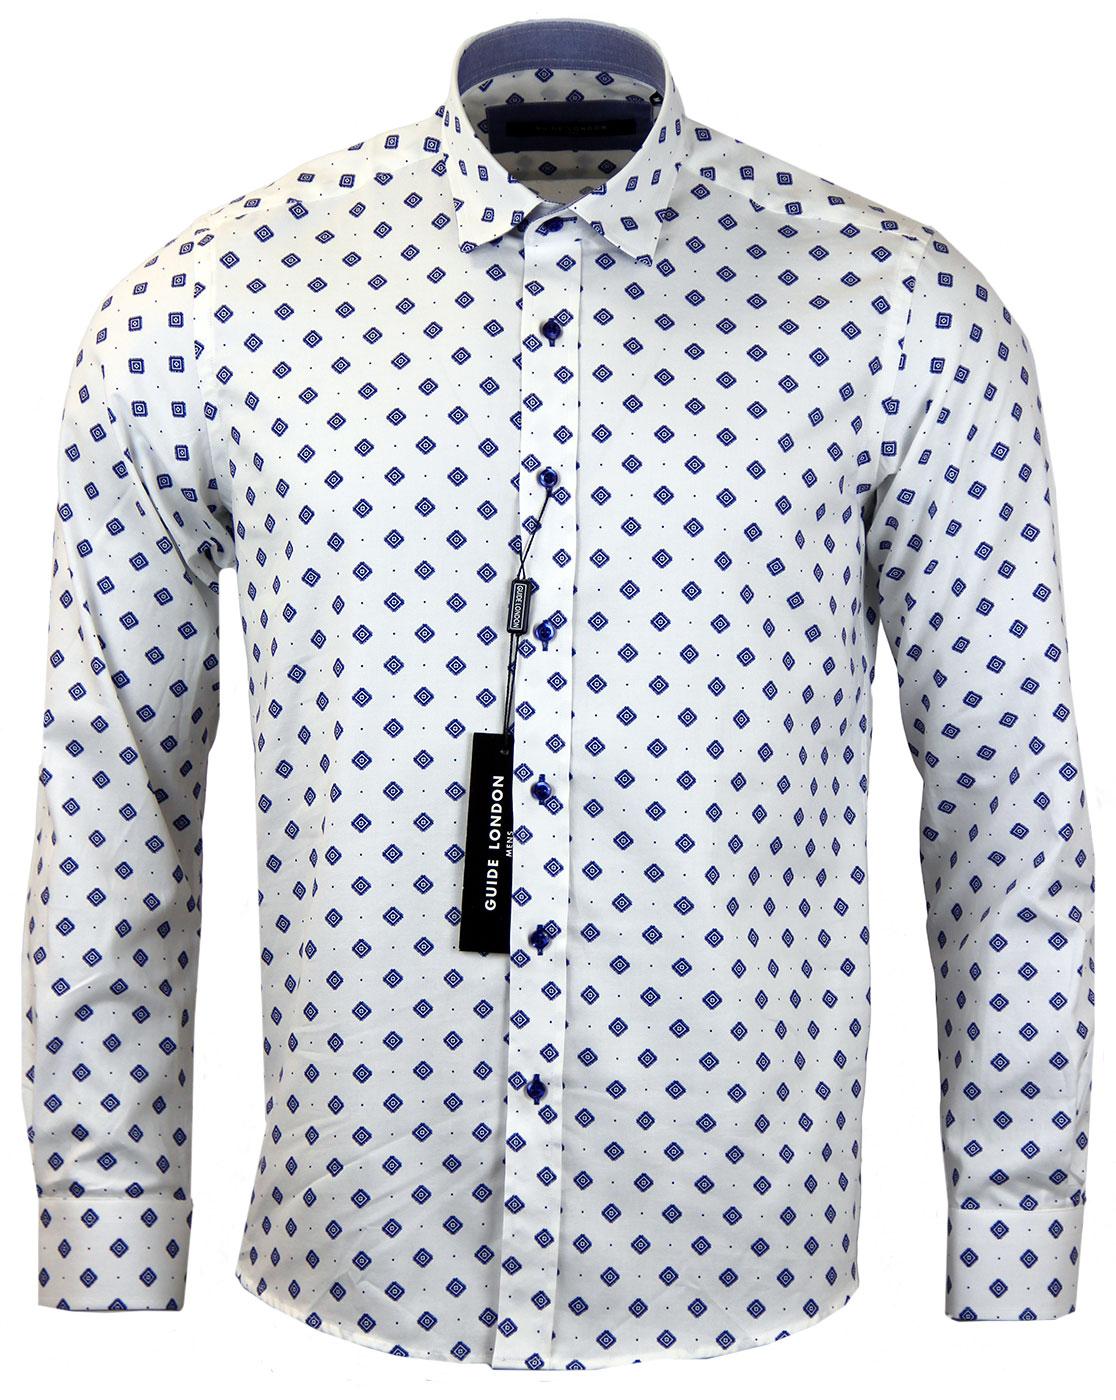 GUIDE LONDON Retro Mod Tile Polka Dot Oxford Shirt